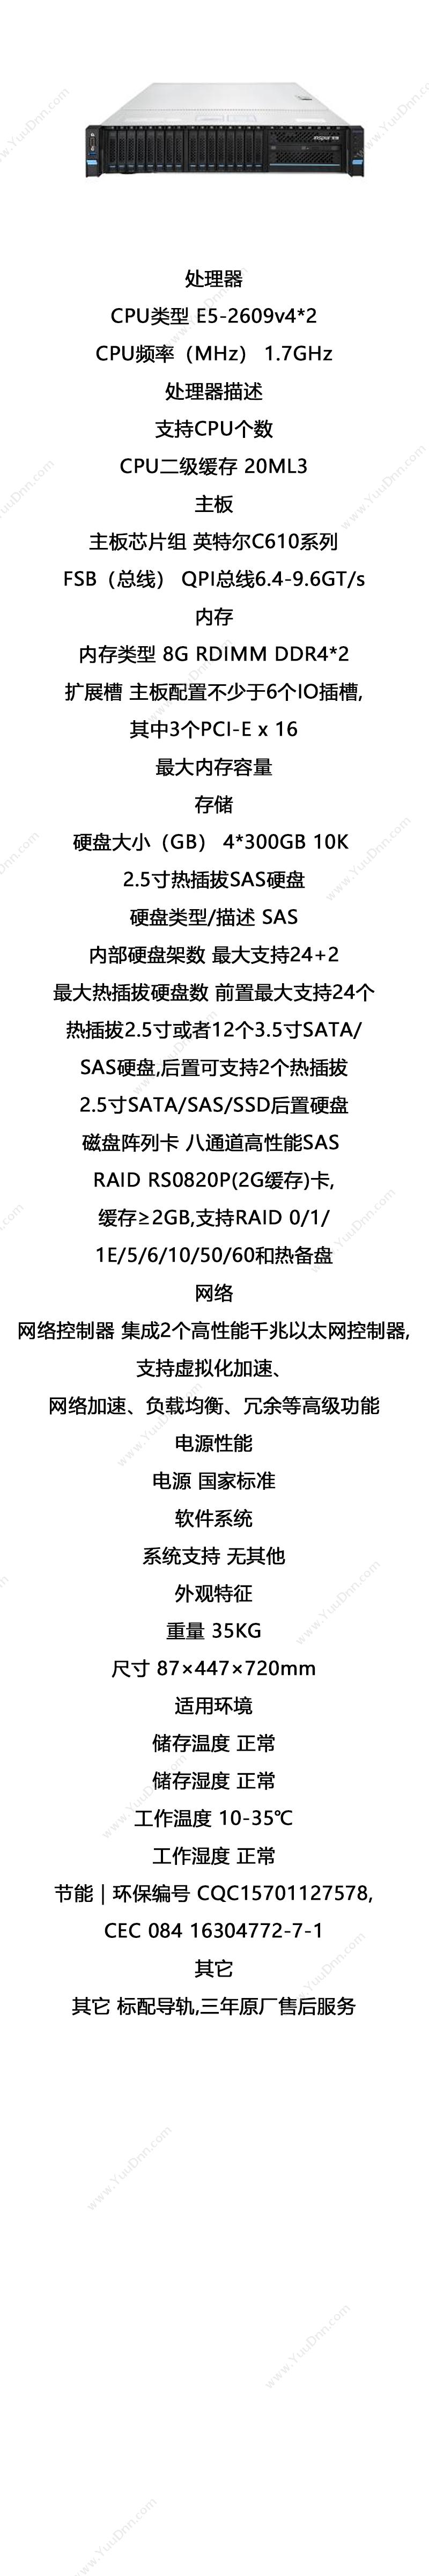 浪潮 Inspur NF5270M4（E5-2609v4(1.7GHz/8c）/6.4GT/20ML3*2/8G DDR4*2/300G SAS 10K 热插拔*4 服务器 87×447×720mm 塔式服务器